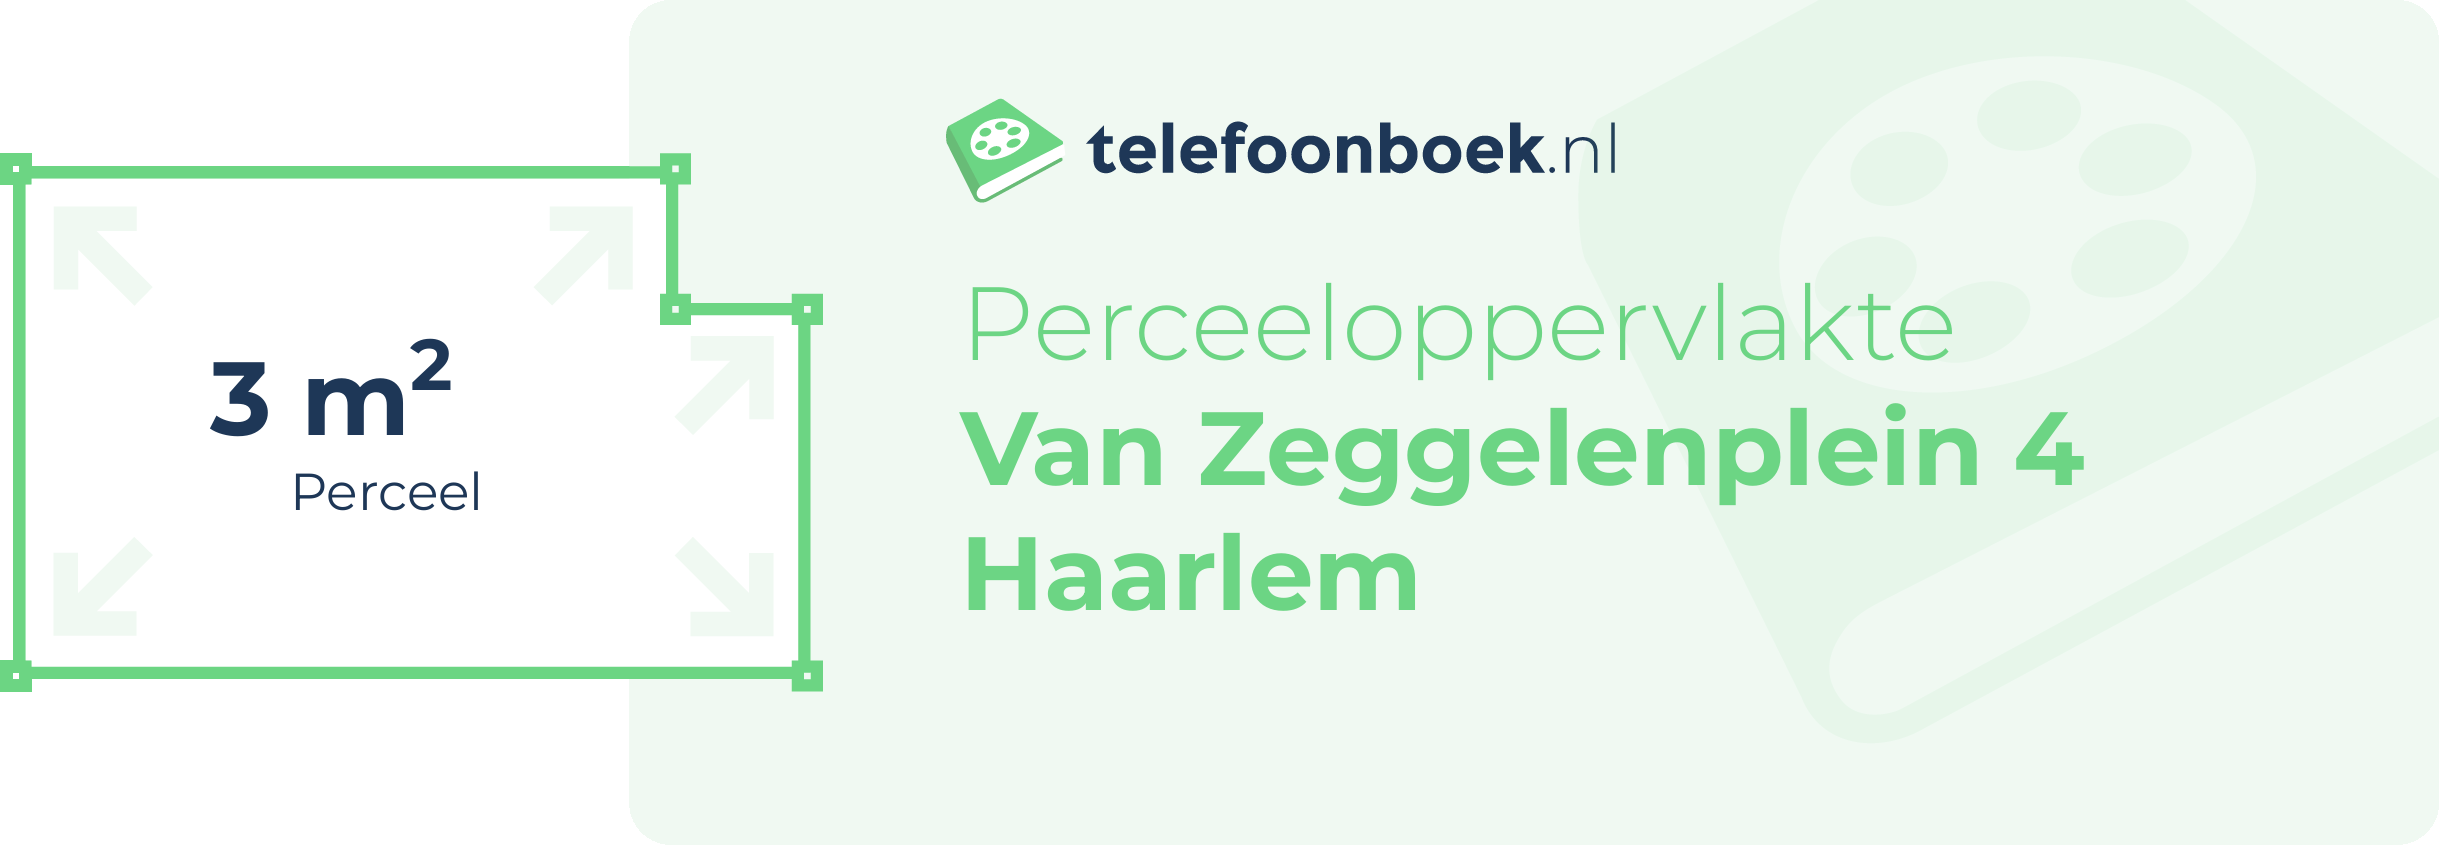 Perceeloppervlakte Van Zeggelenplein 4 Haarlem